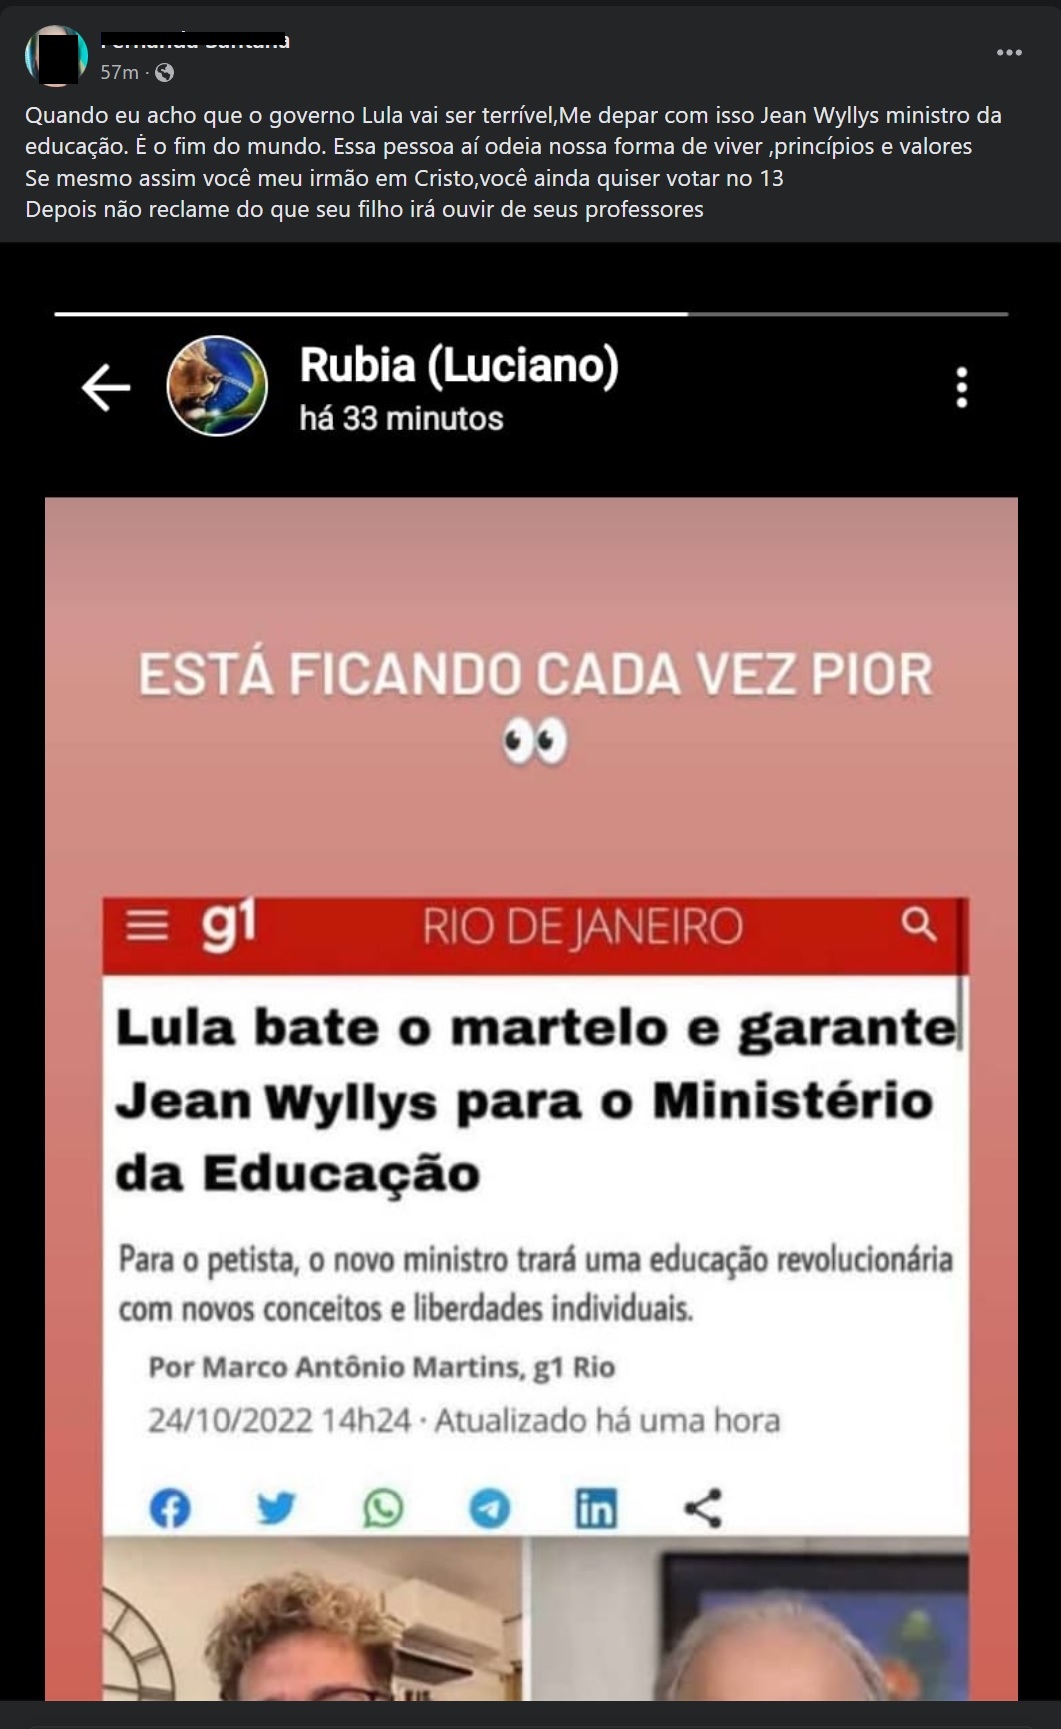 Se for eleito, Lula chamará o ex-deputado Jean Wyllys para ser ministro da Educação?